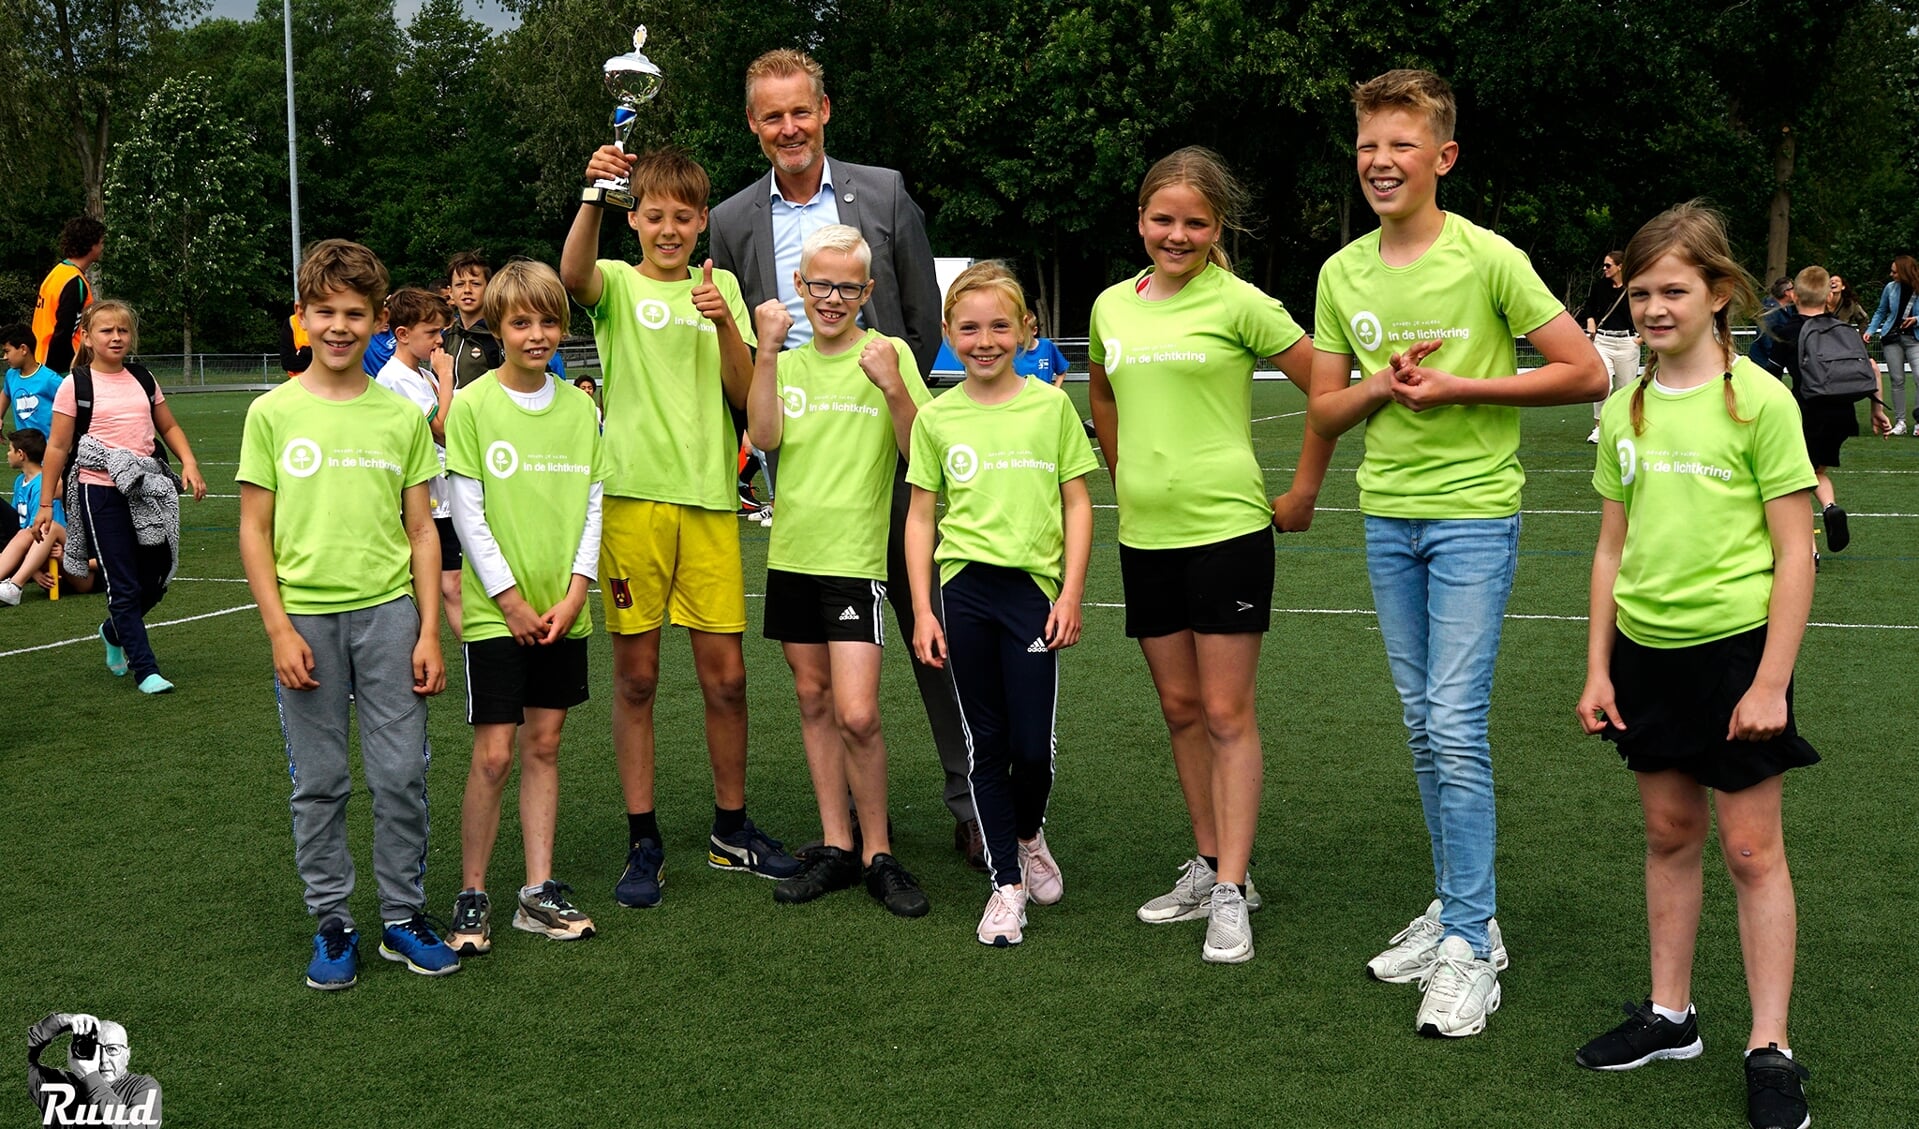 Hardlopers In de Lichtkring winnen estafette bij tweede scholierensportdag